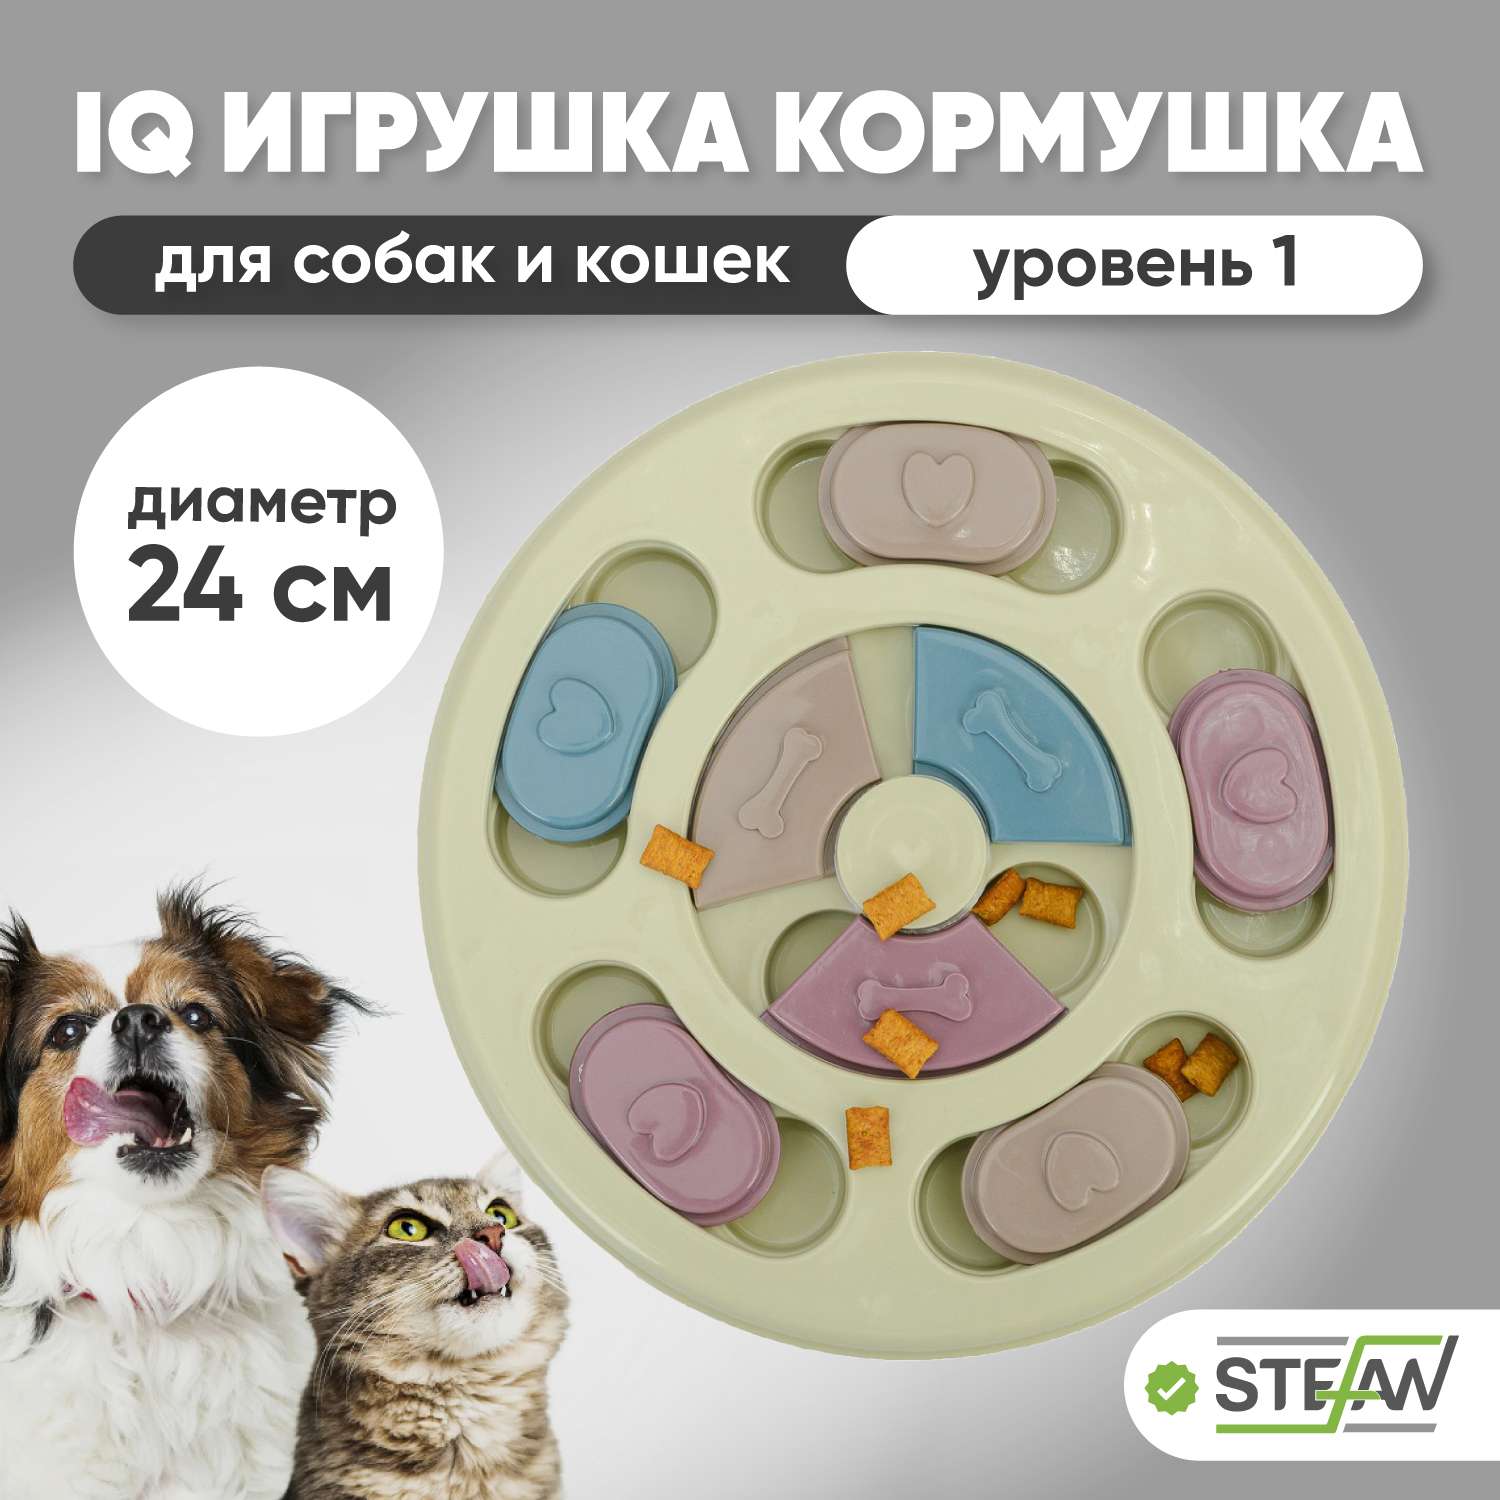 Игрушка для животных Stefan интерактивная развивающая головоломка IQ зеленая - фото 1